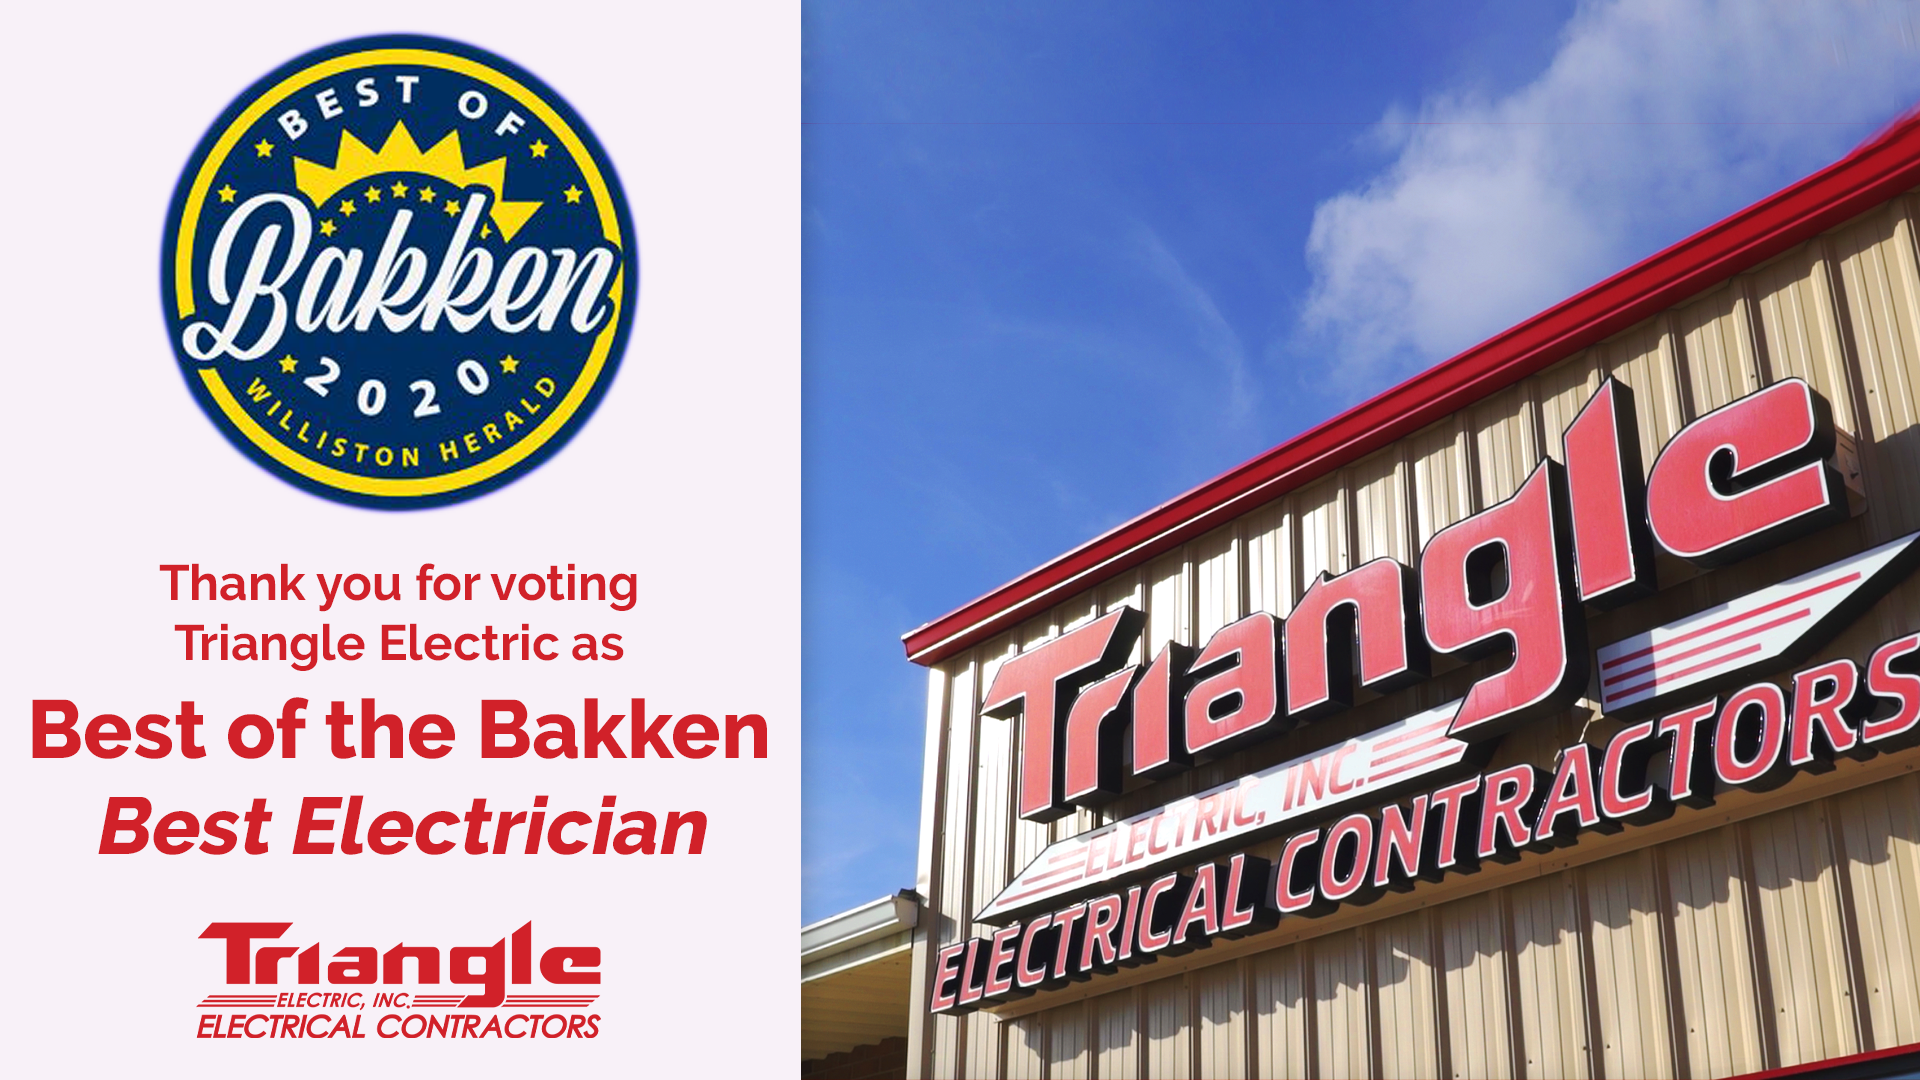 Best of the Bakken Best Electrician